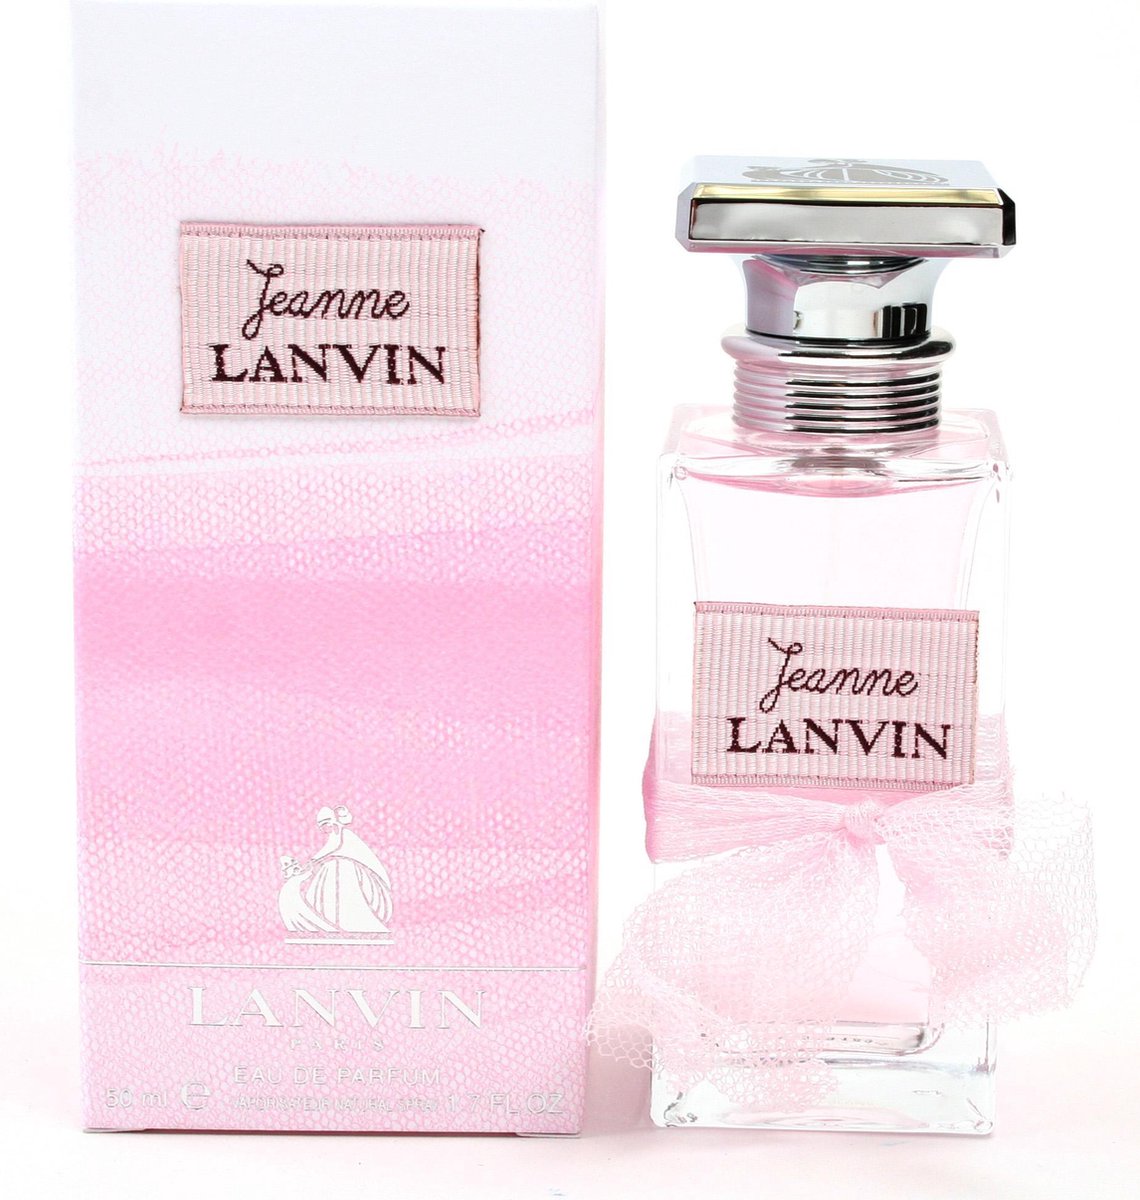 Lanvin Jeanne - 50ml - Eau de parfum